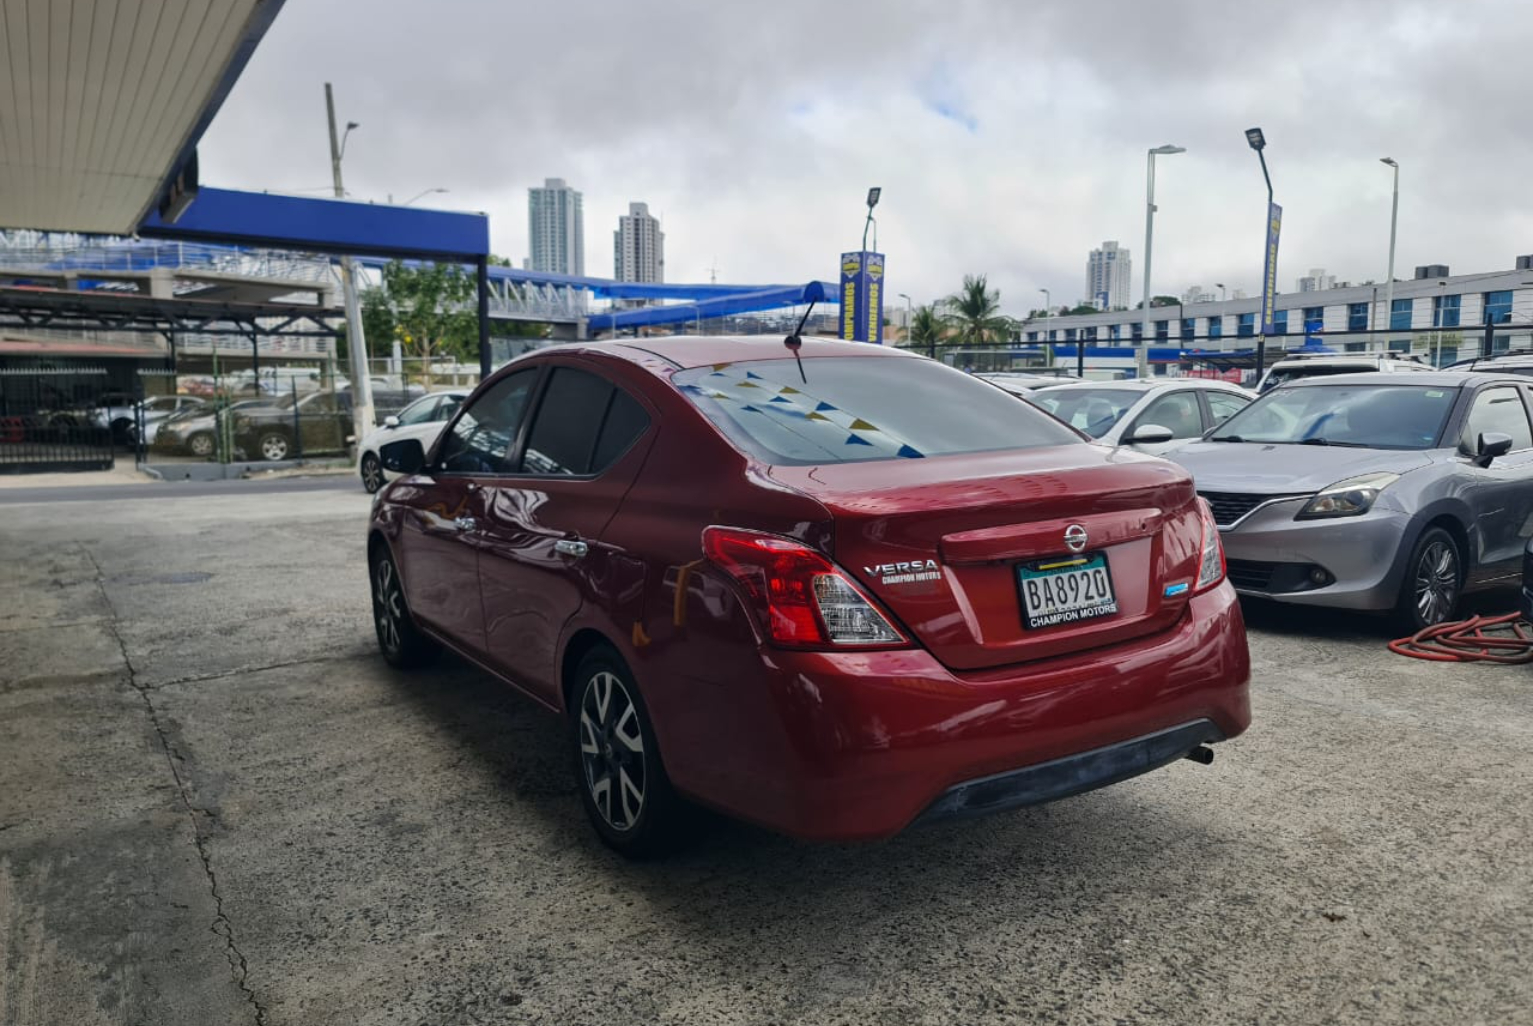 Nissan Versa 2017 Automático color Rojo, Imagen #6